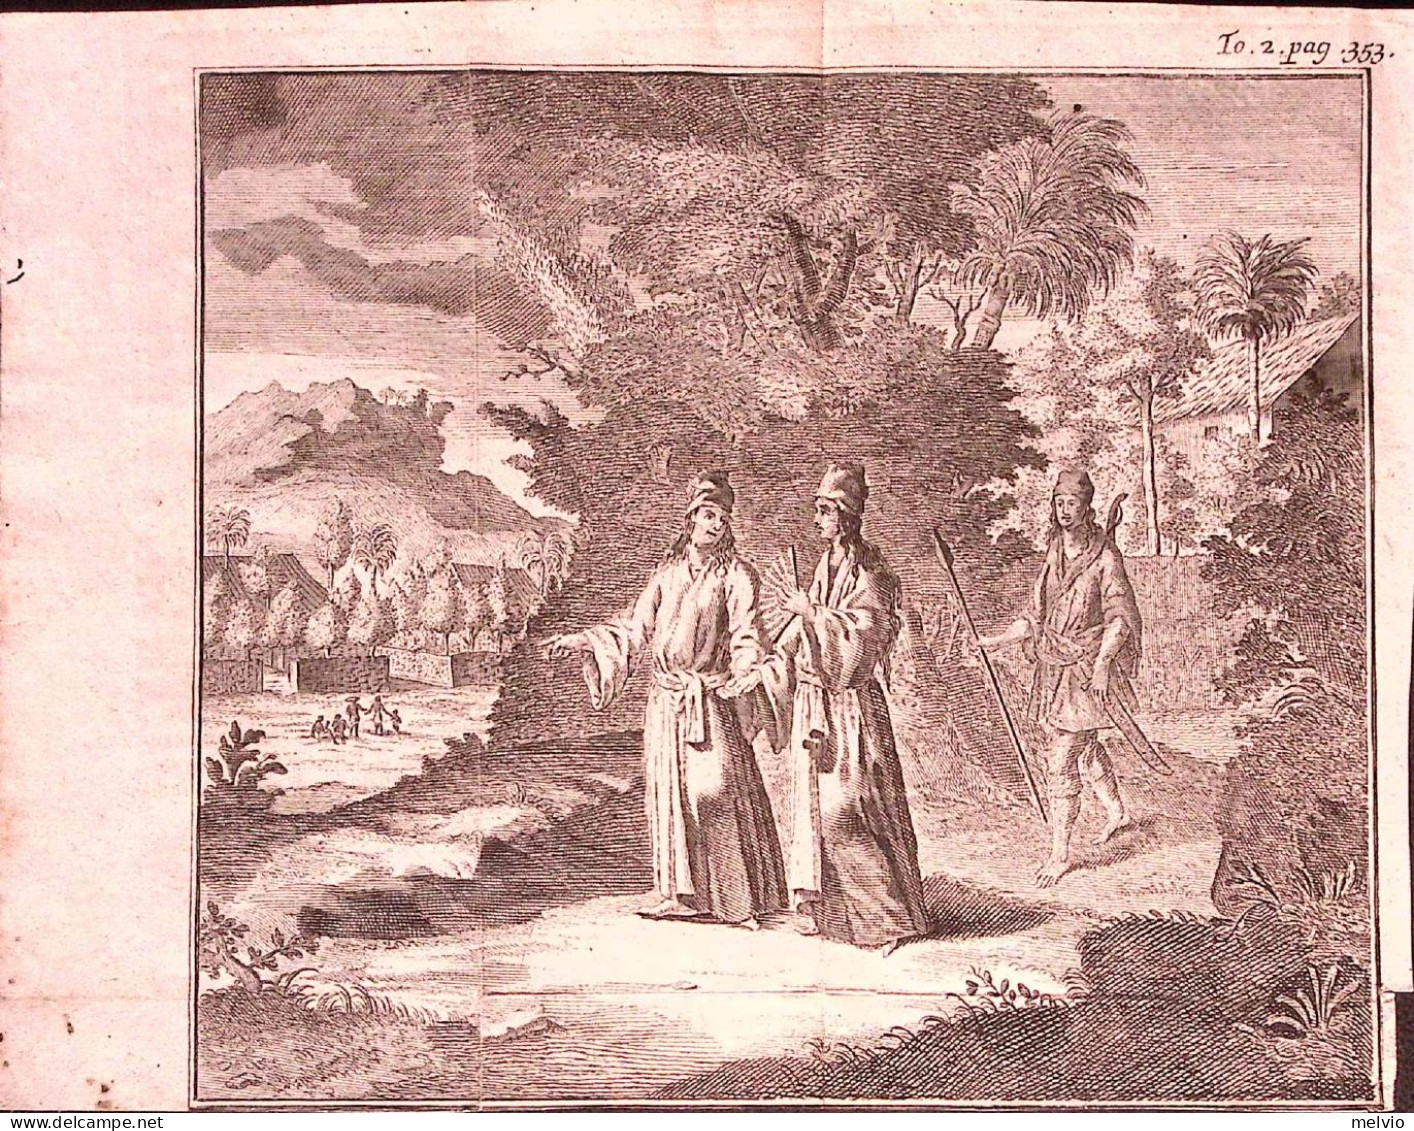 1730-Tirion Tonkin Vietnam Personaggi In Costume E Abitazioni Dim.19,5x16,5 Cm. - Prenten & Gravure